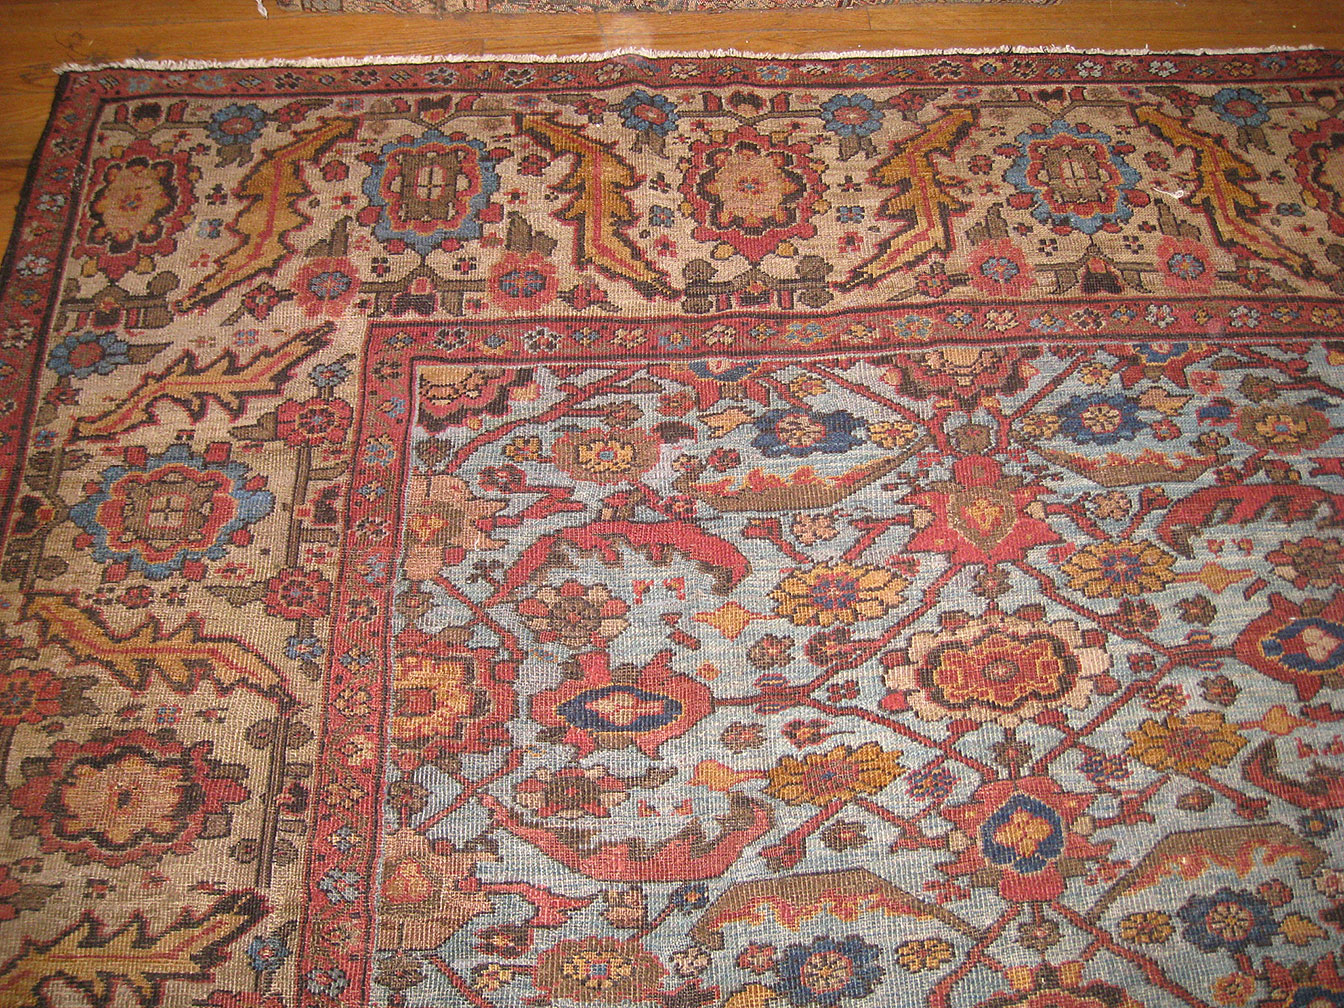 Antique sultan abad Carpet - # 52121